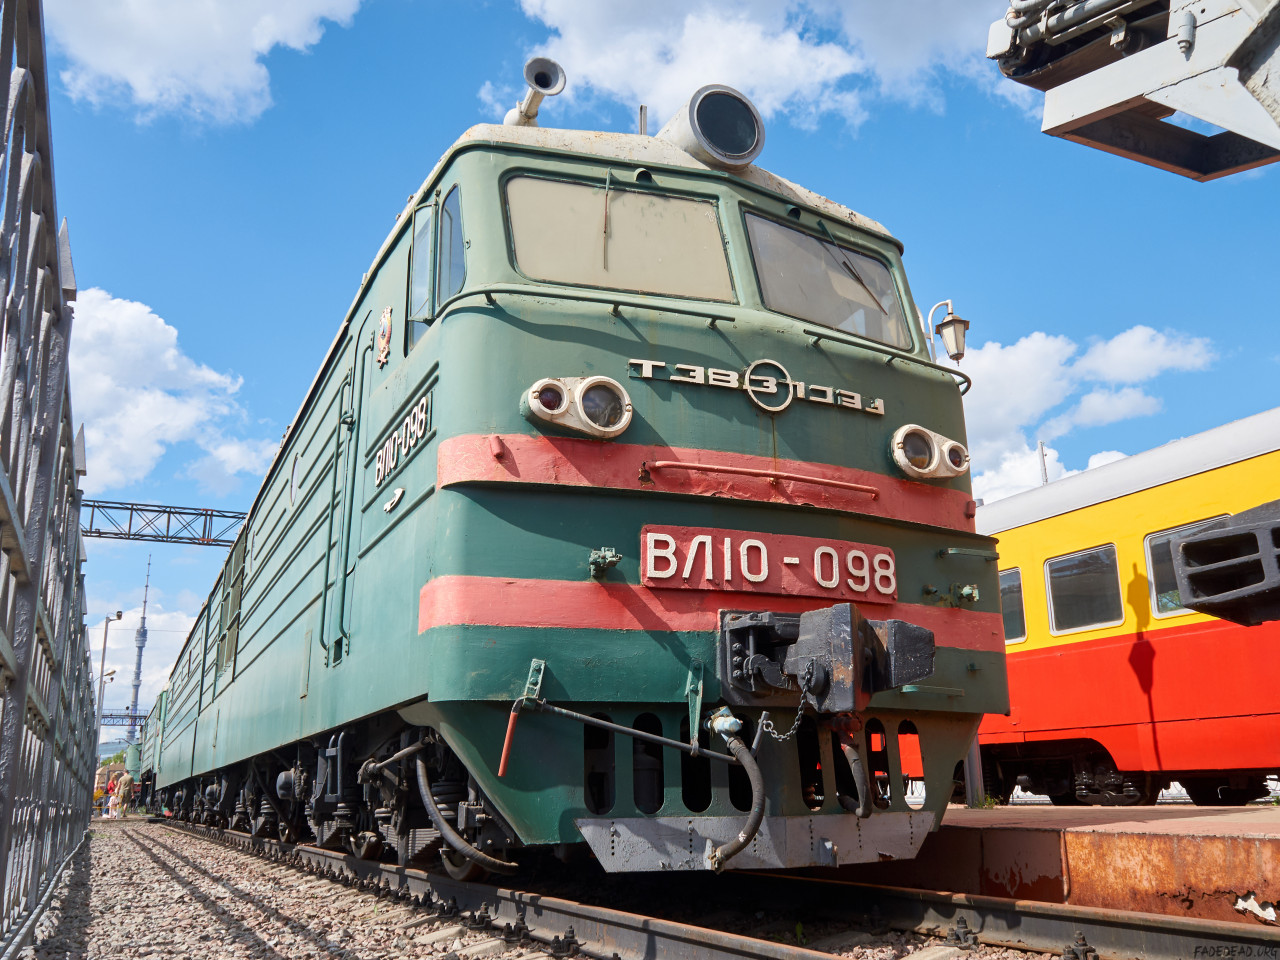 Thumbnail for «Слегка потрёпанный ВЛ10-098 в железнодорожном музее Москвы»